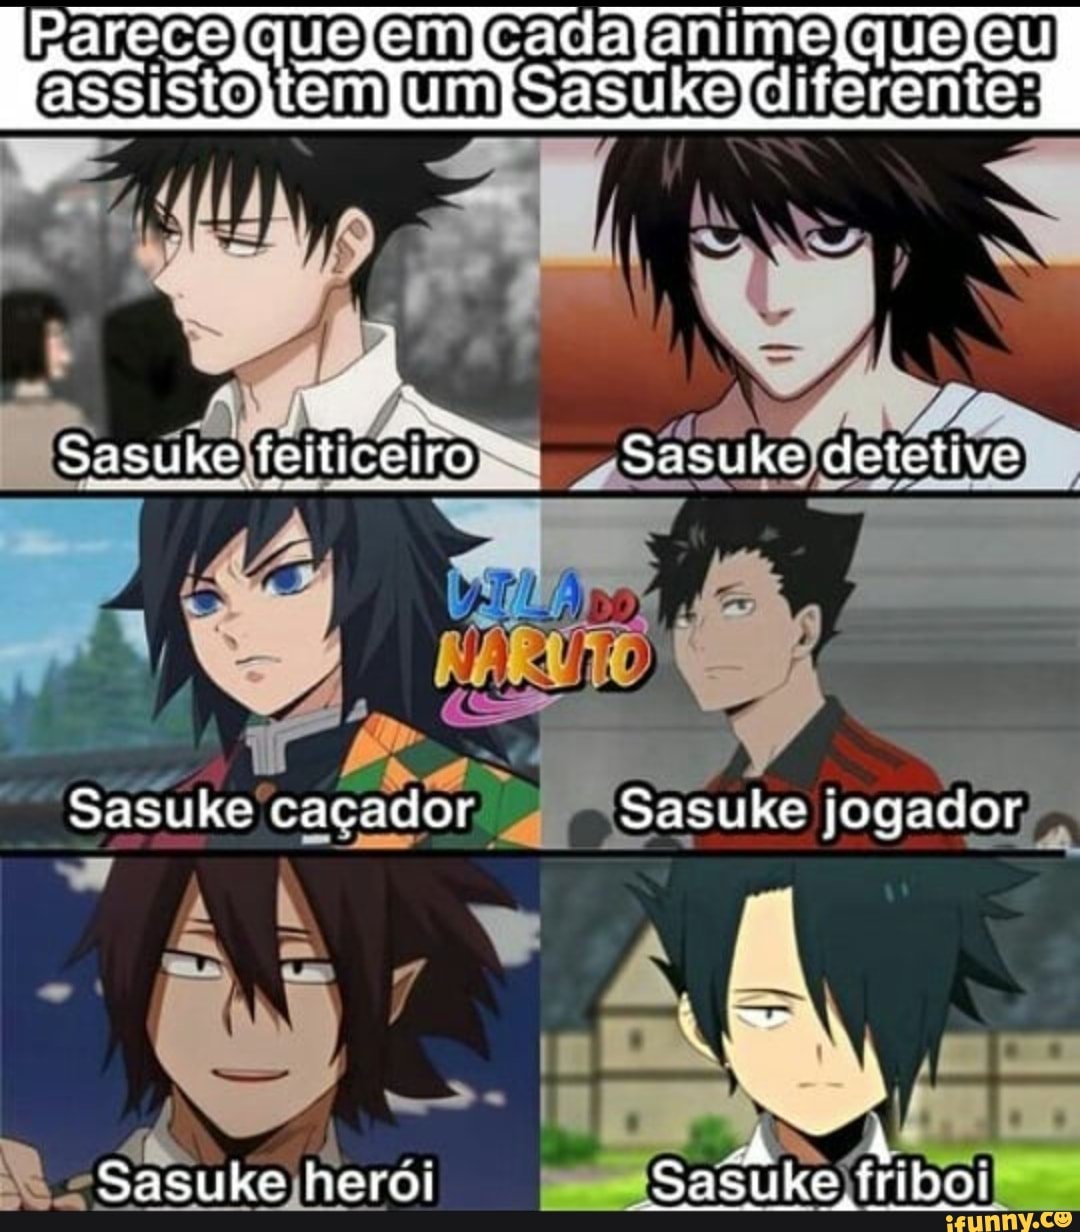 Gente com certeza não é só eu que acho os Sasuke bravo fofoeu acho  ;-;